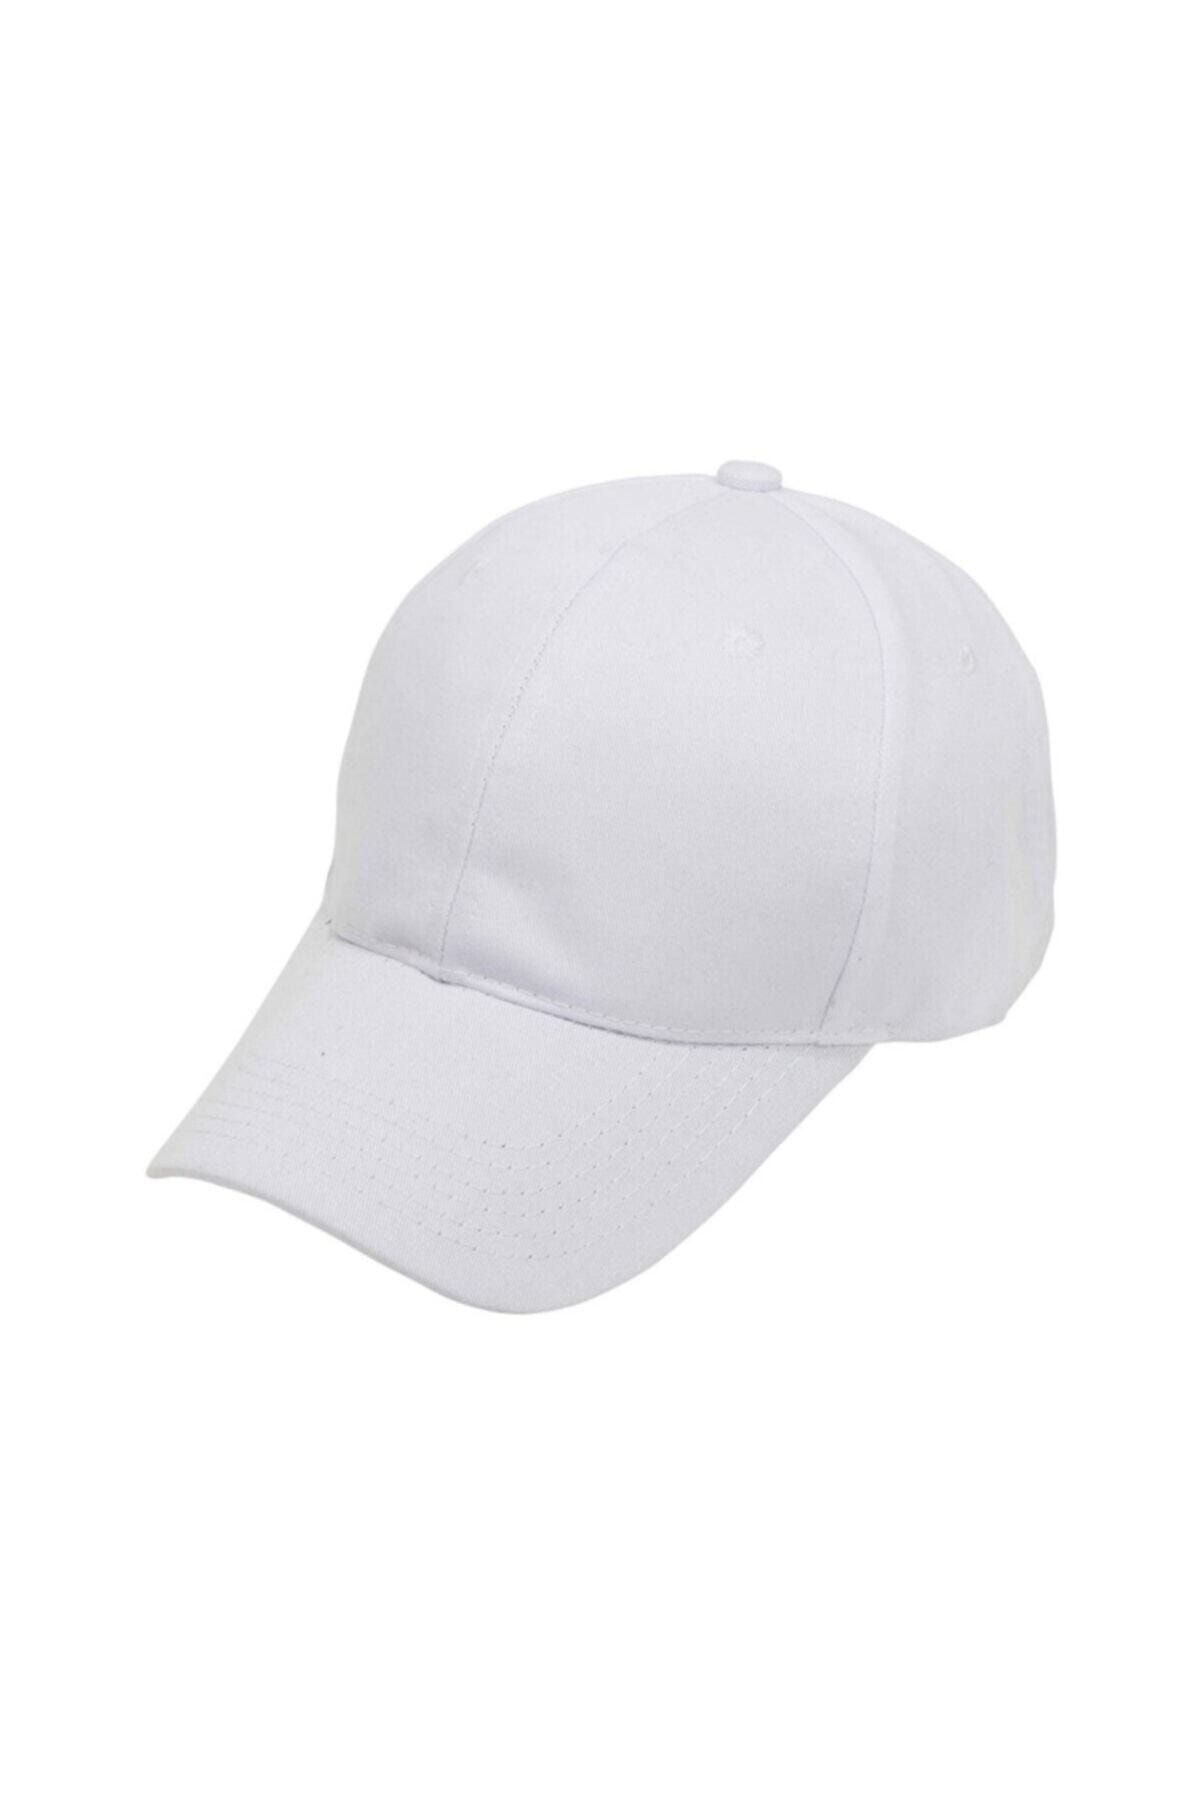 megalaksi Unisex Beyaz Arkası Cırtlı Ayarlanabilir Şapka